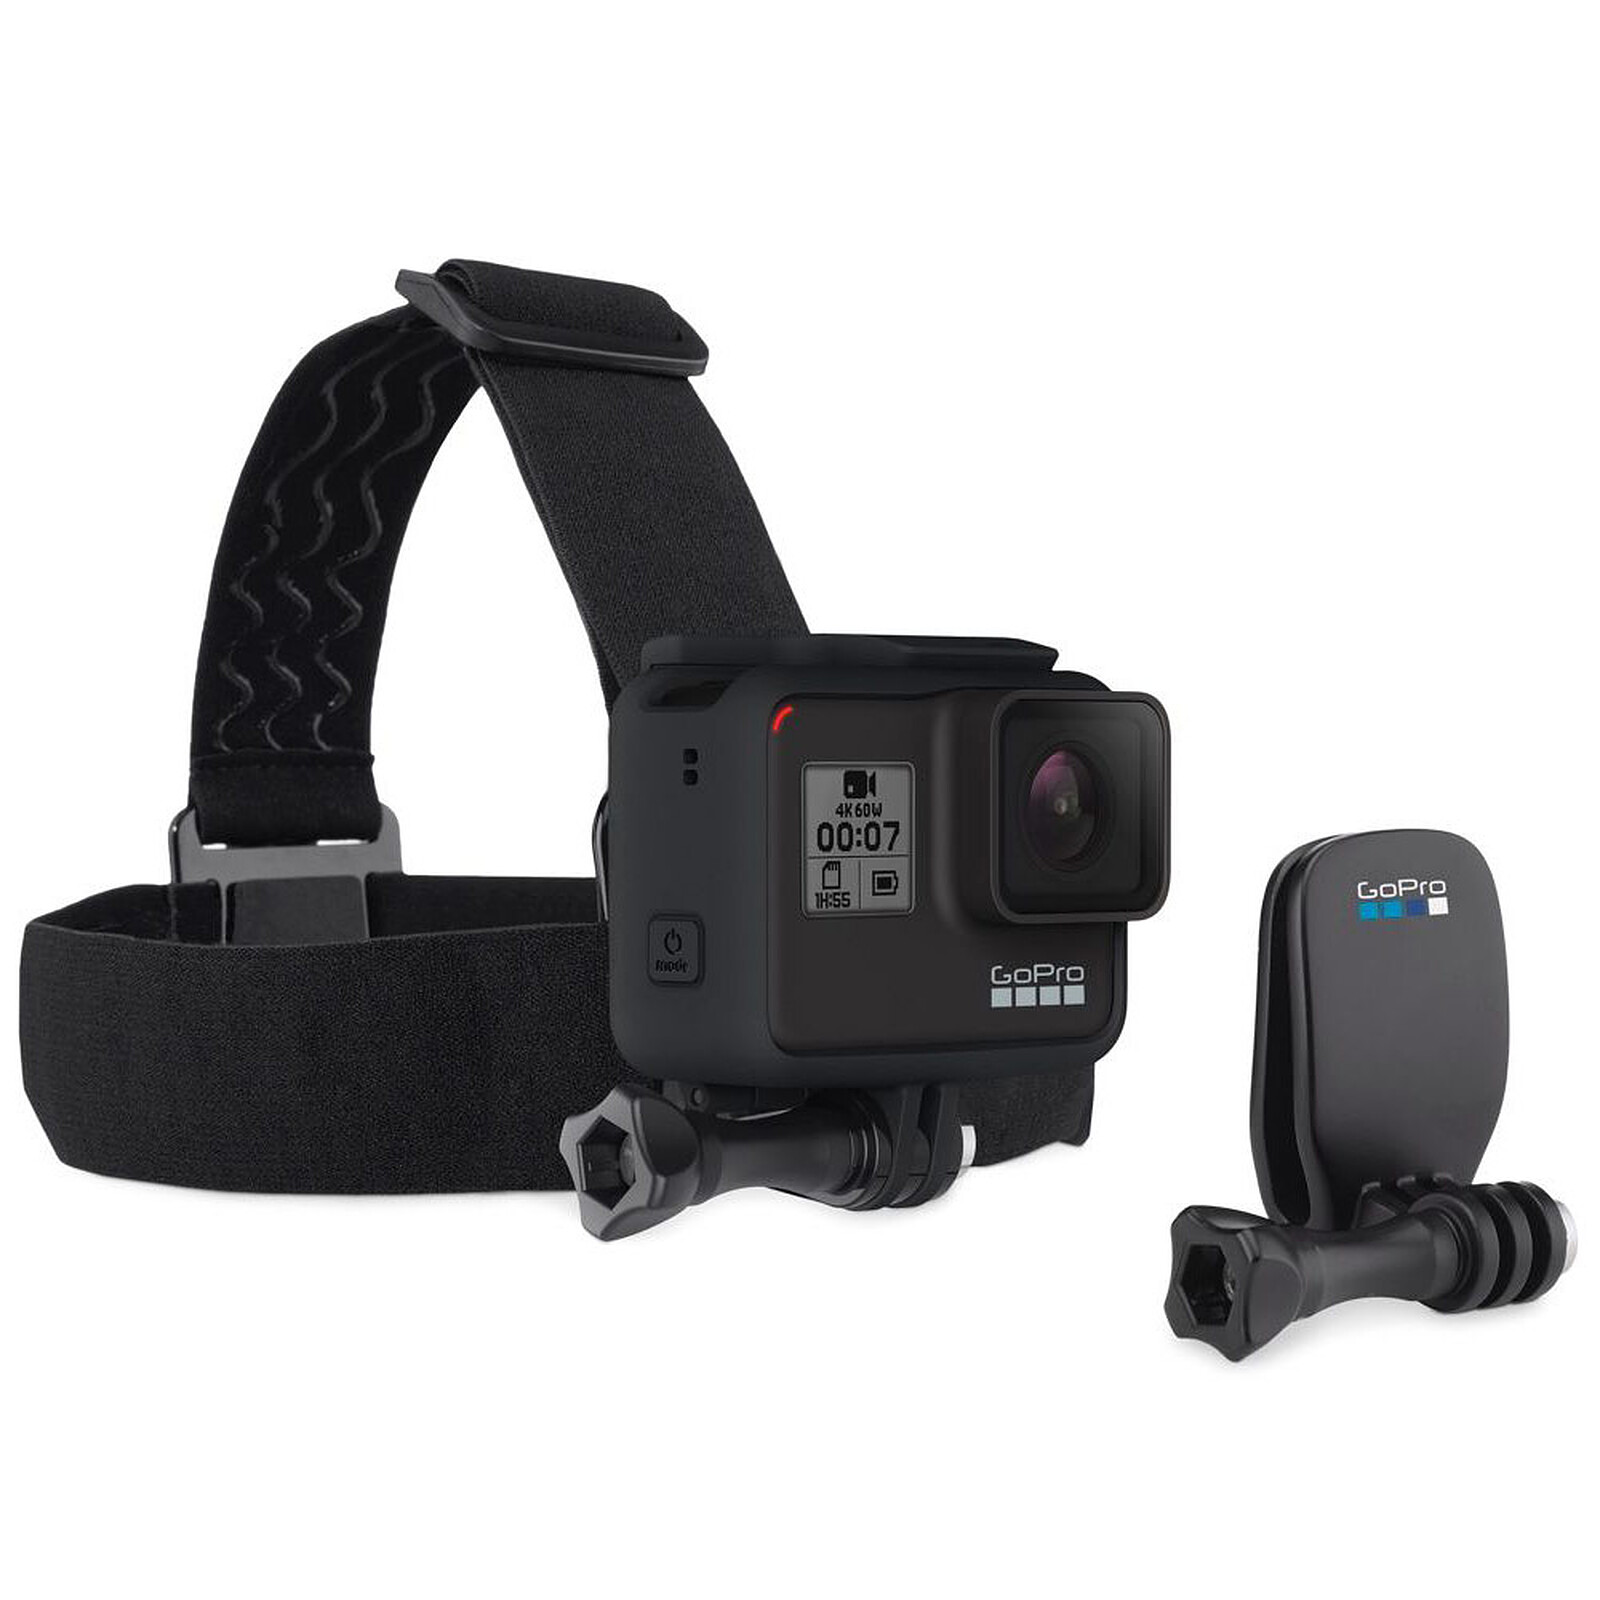 Accessoires pour caméra sport Movincam FIXATION CASQUE LATÉRALE compatible  tous modèles GOPRO et osmo action - FIXATION CASQUE LATÉRALE POUR CAMERA  SPORTIVE